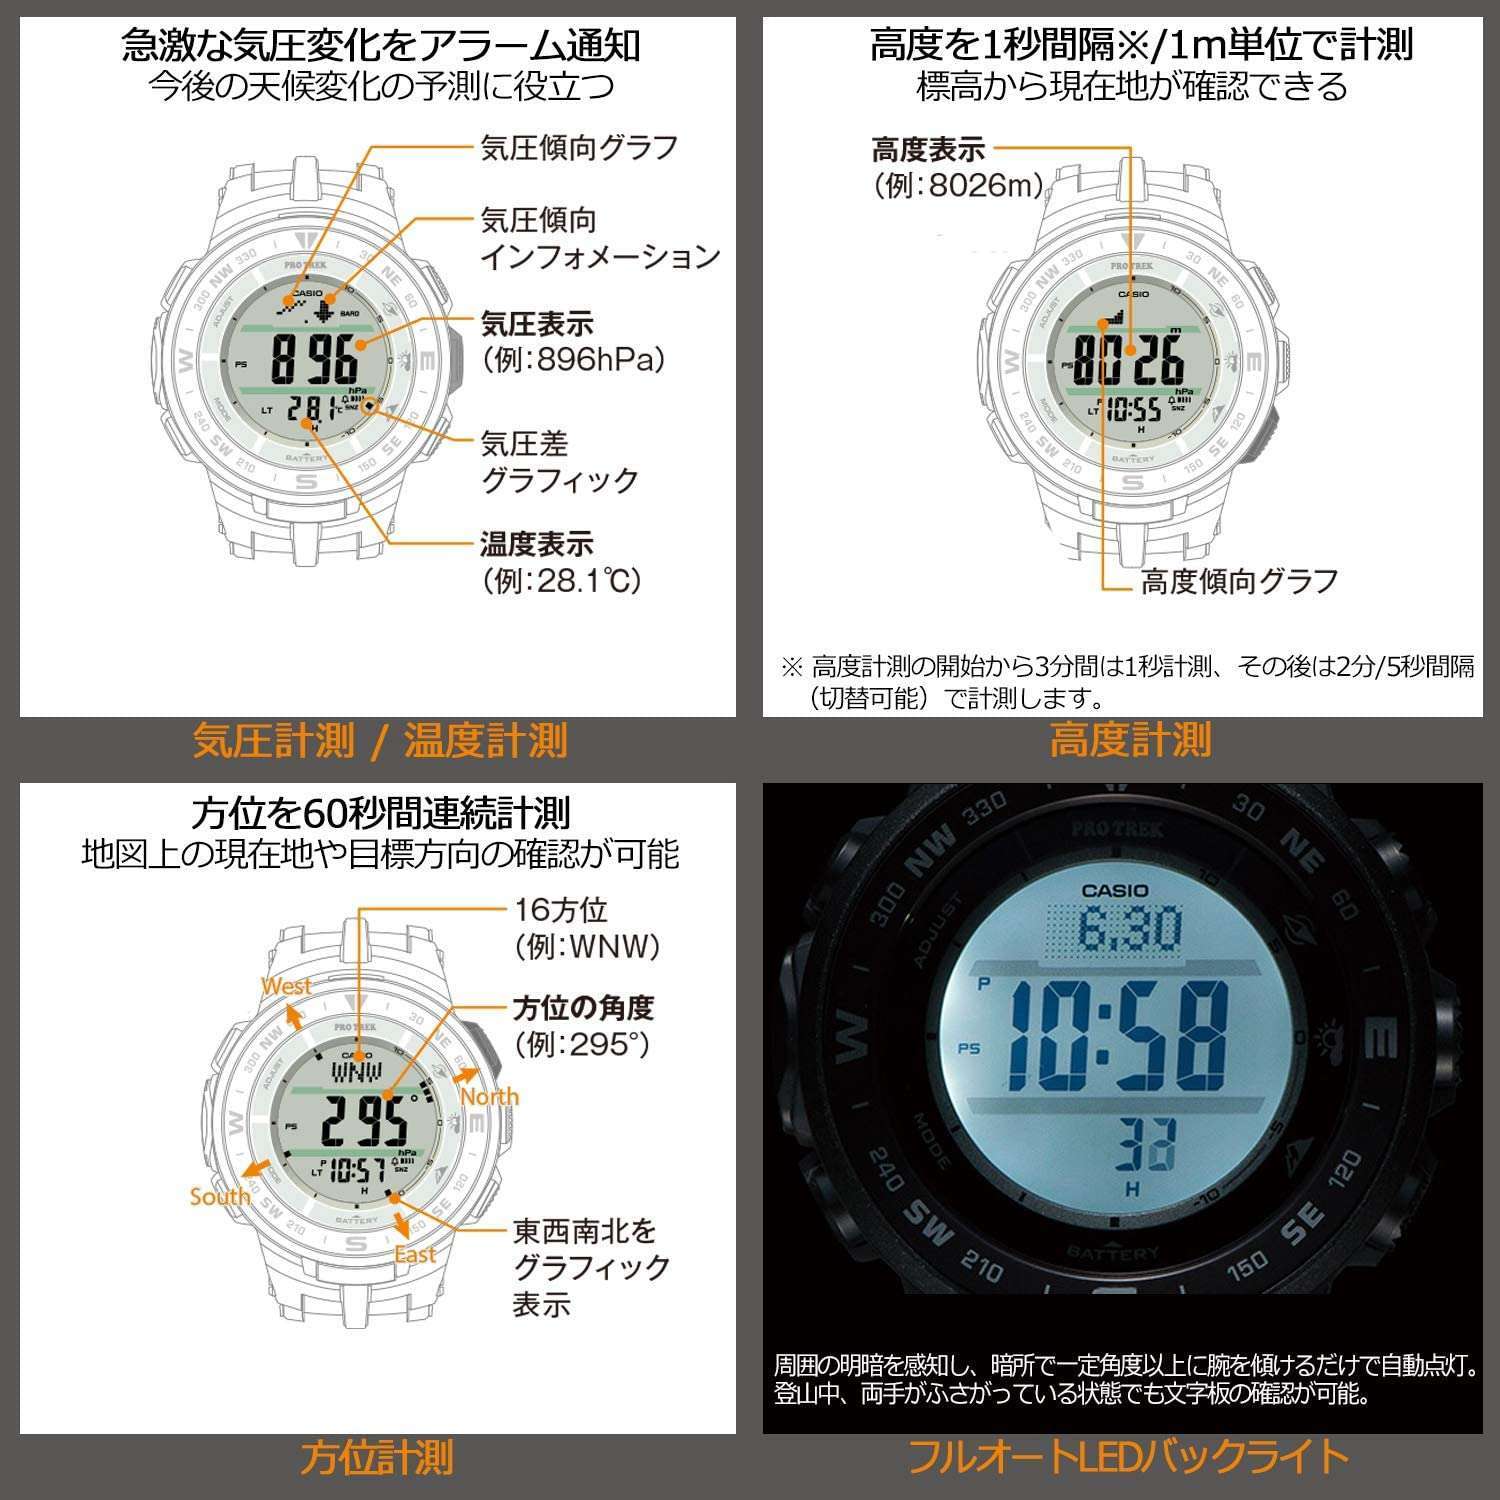 ROOK JAPAN:CASIO PROTREK JDM MEN WATCH PRG-330-2AJF,JDM Watch,Casio Protrek